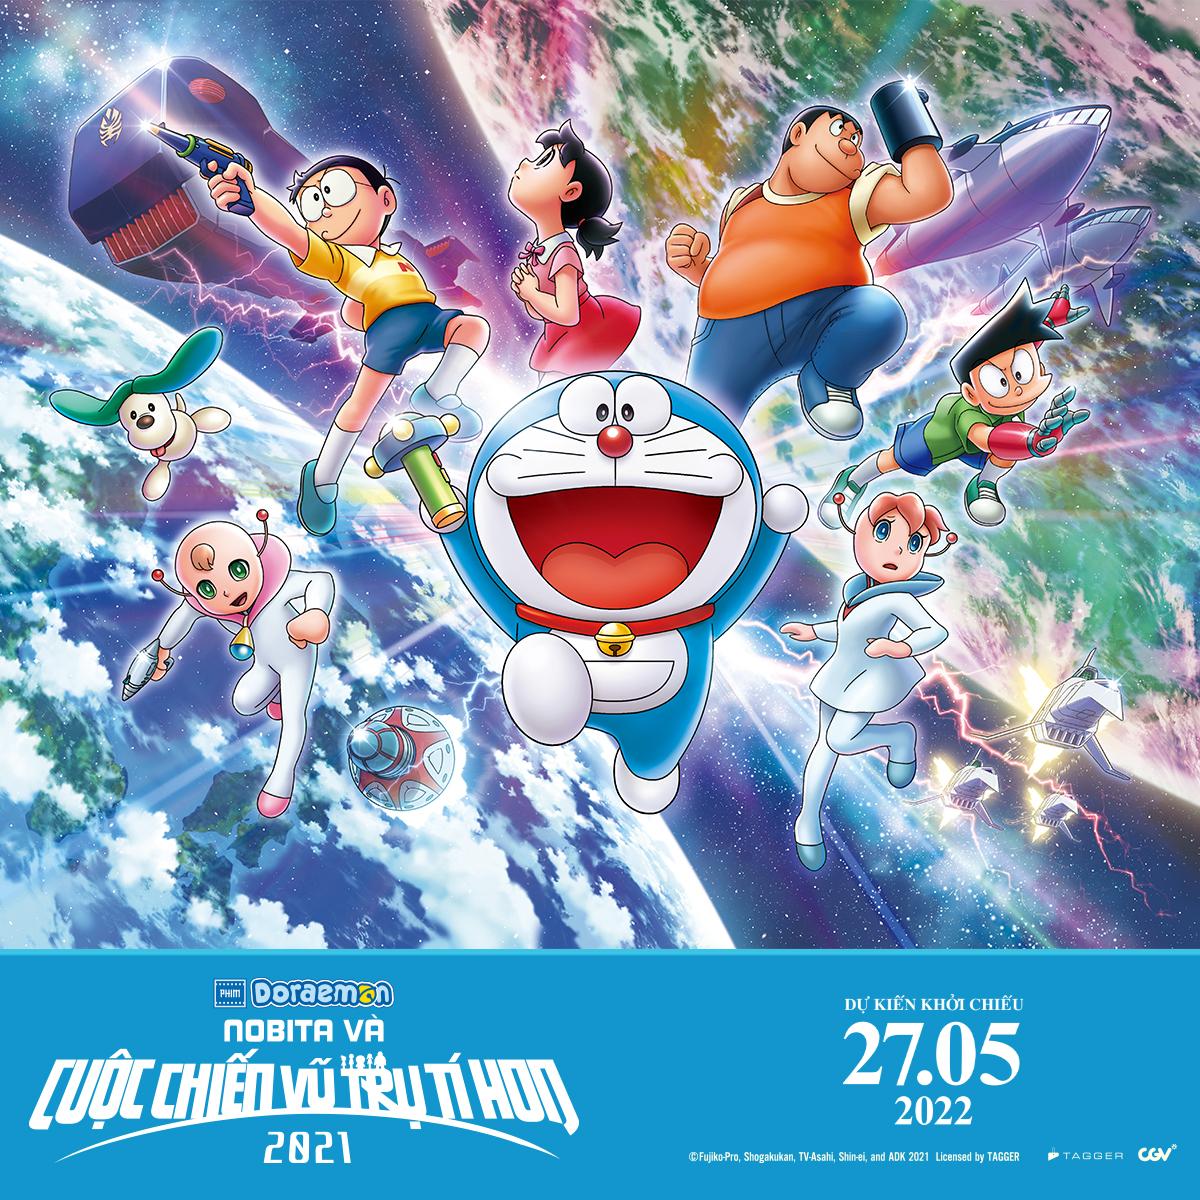 Hãy khám phá ảnh Tết Doraemon để cùng mừng xuân đến với những chú mèo máy đáng yêu nhất! Sắm cho mình những tấm hình tết Doraemon đầy màu sắc và hài hước, để không khí xuân tươi vui tràn đầy trong gia đình bạn nhé!